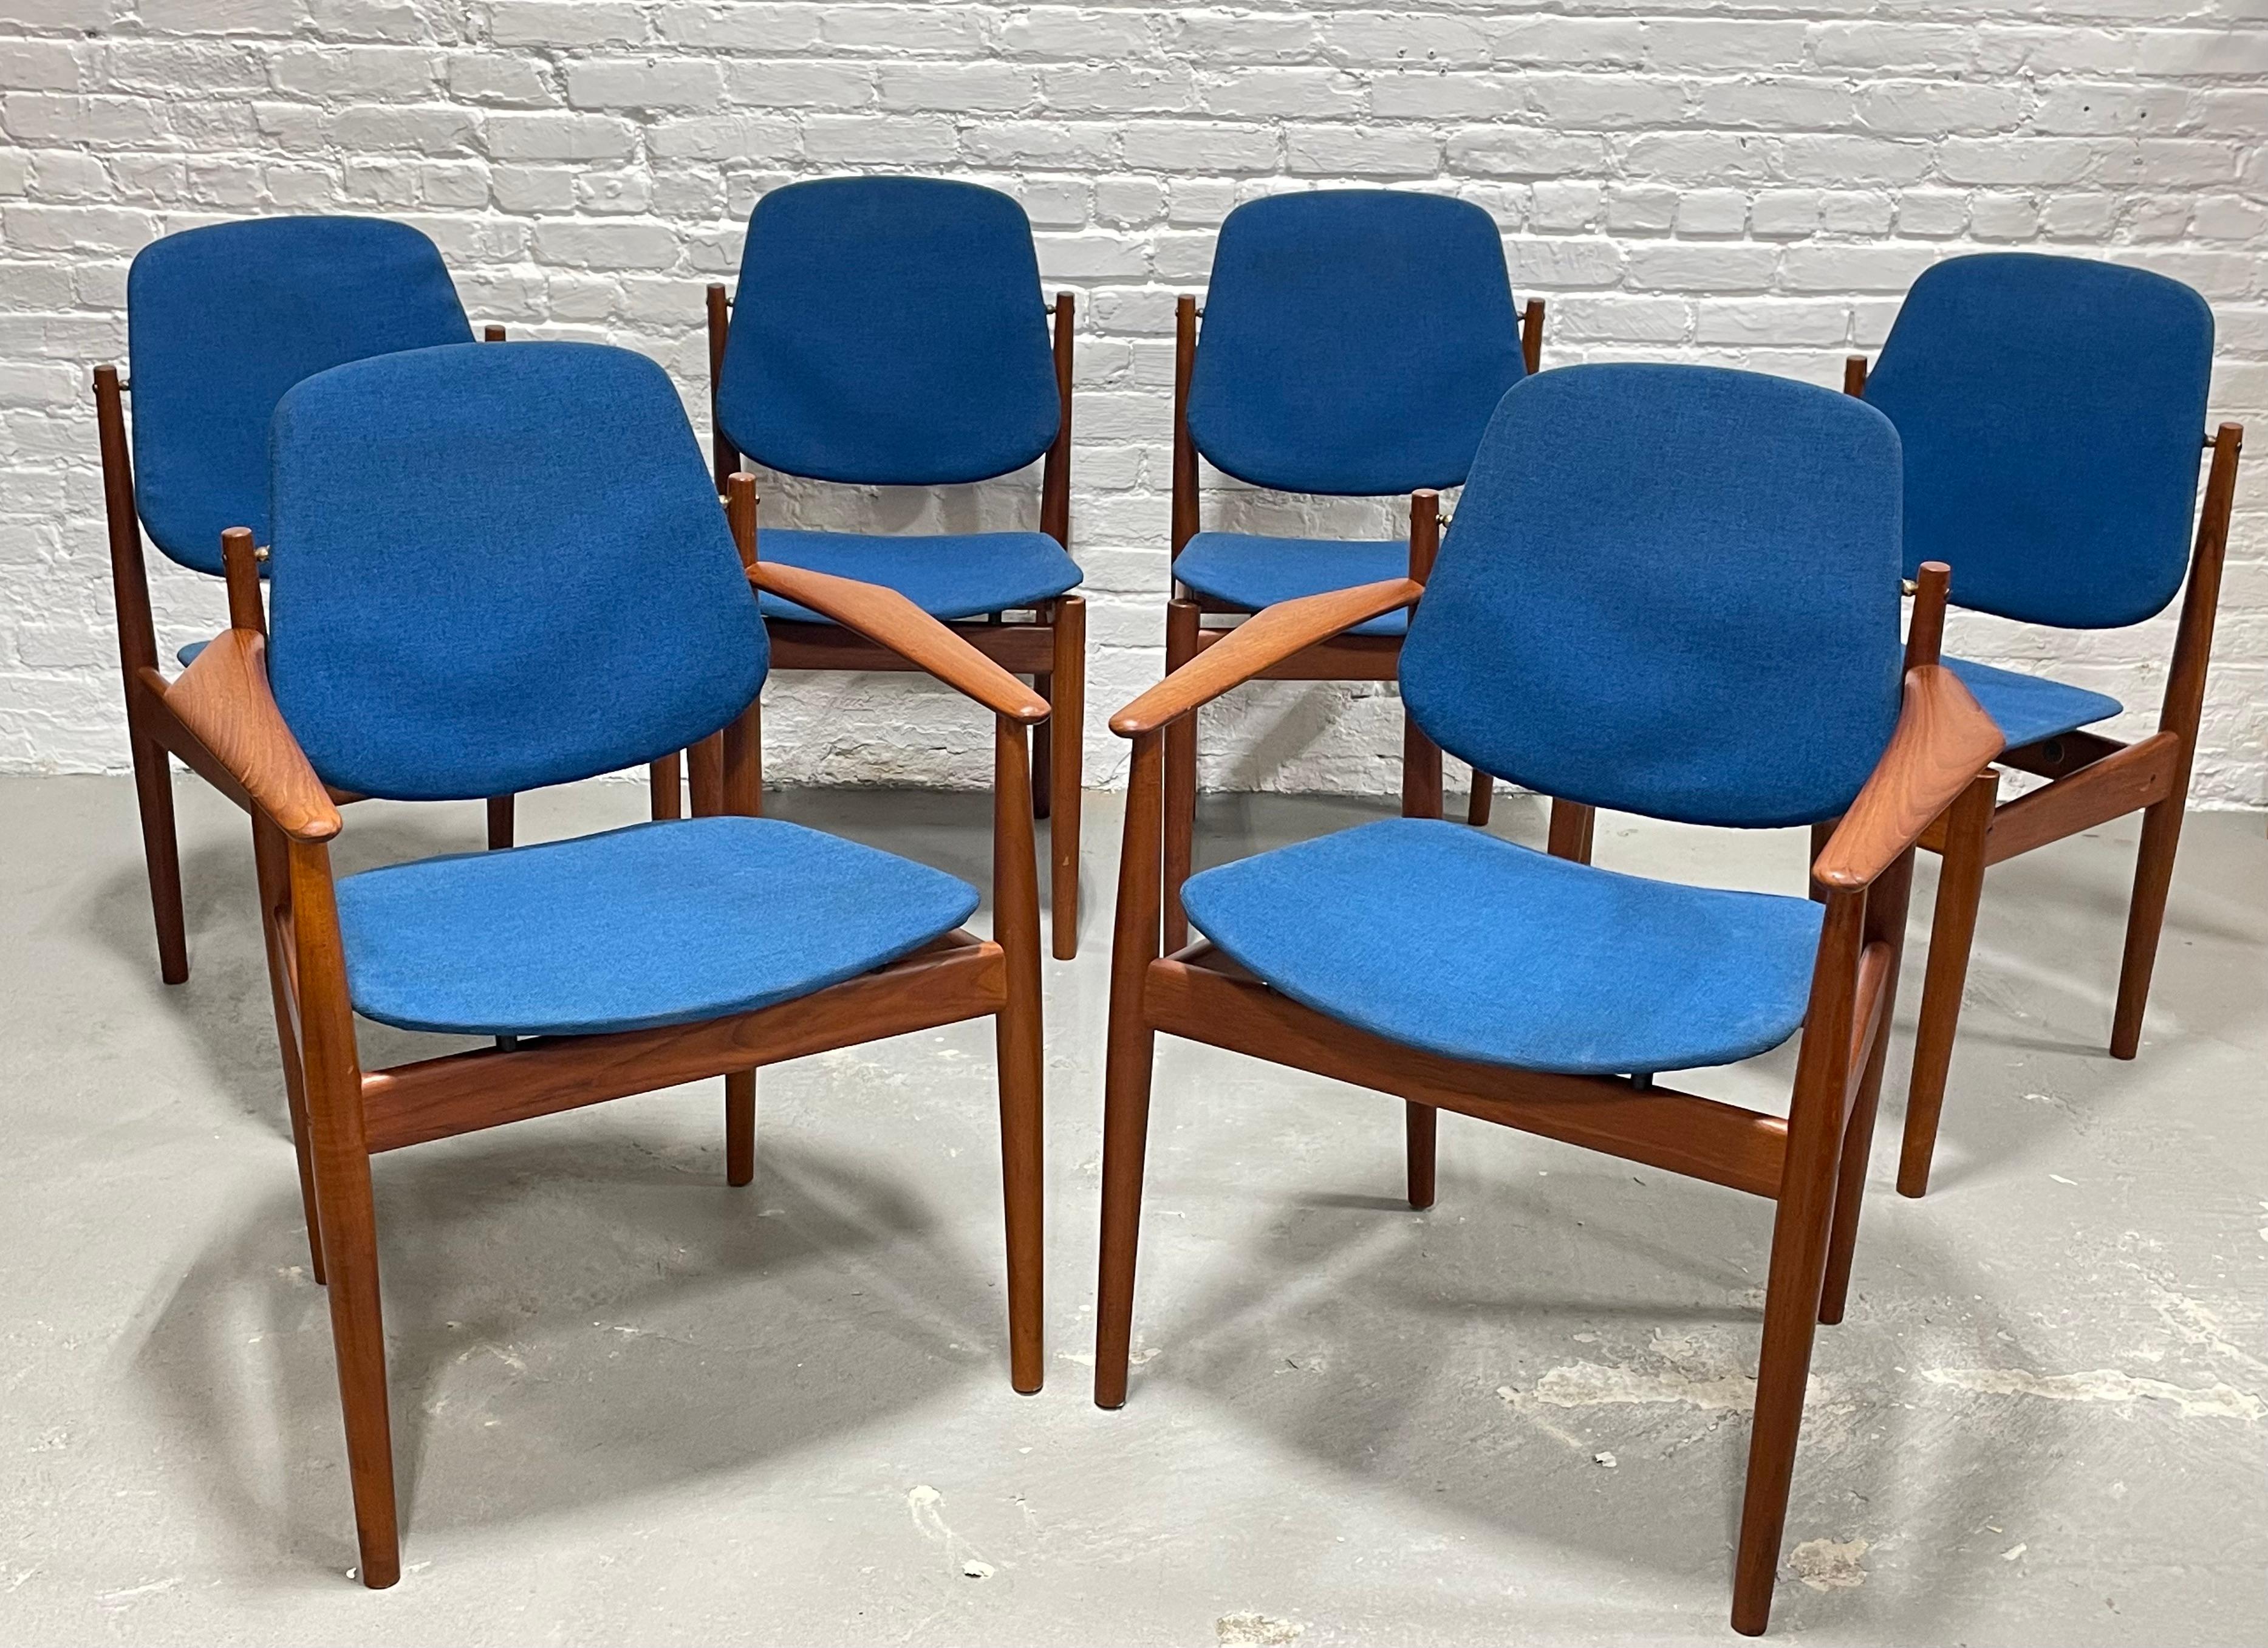 Seltener und unglaublicher Satz von sechs Mid Century Modern Danish Teak Modell 203 Dining Chairs von Arne Vodder für France & Daverkosen.  Diese Stühle sind aus jedem Blickwinkel ein Hingucker. Das atemberaubende Teakholz weist eine unglaubliche